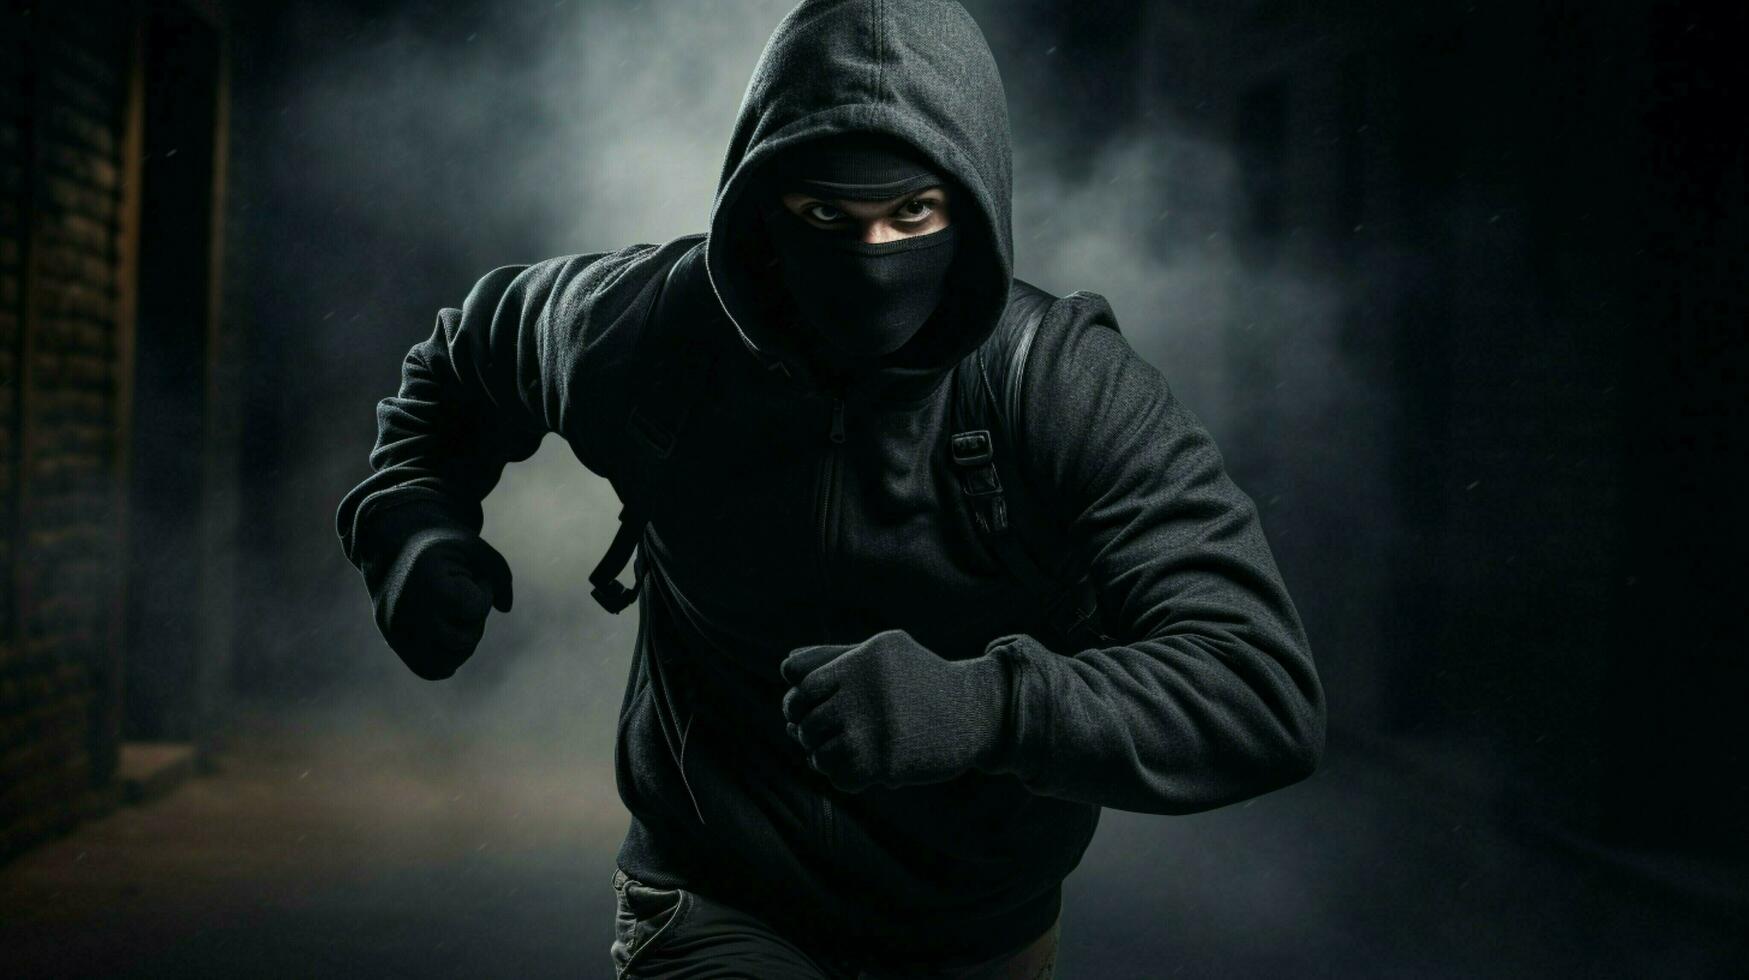 hooded burglar exercising danger in black solitude photo